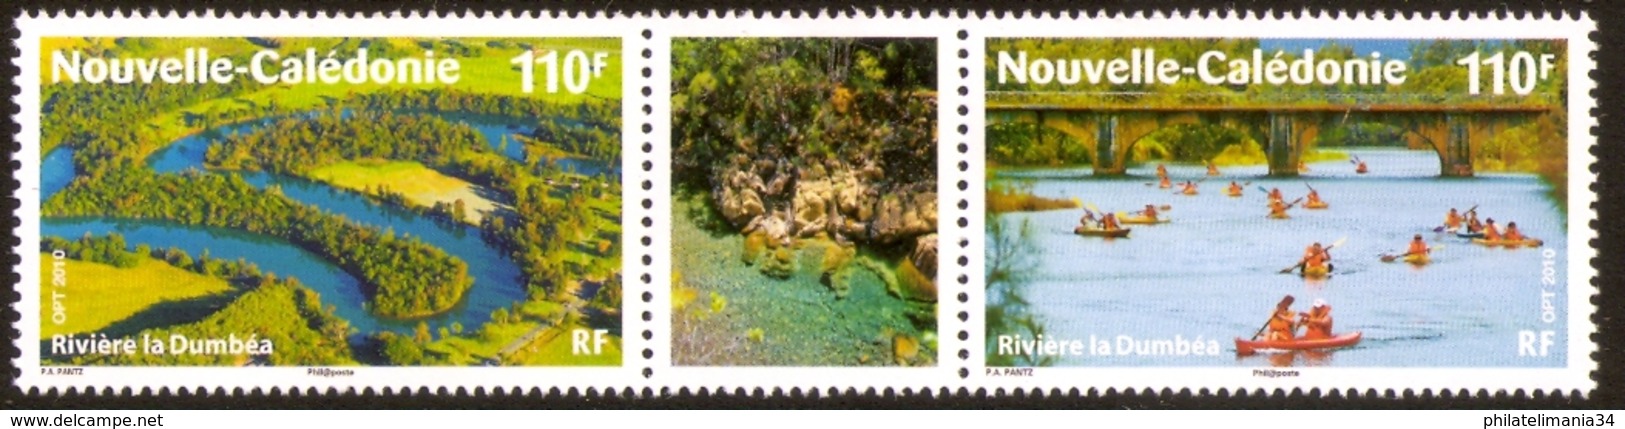 Nouvelle-Calédonie 2010 - Rivière : "La Dumba - Unused Stamps